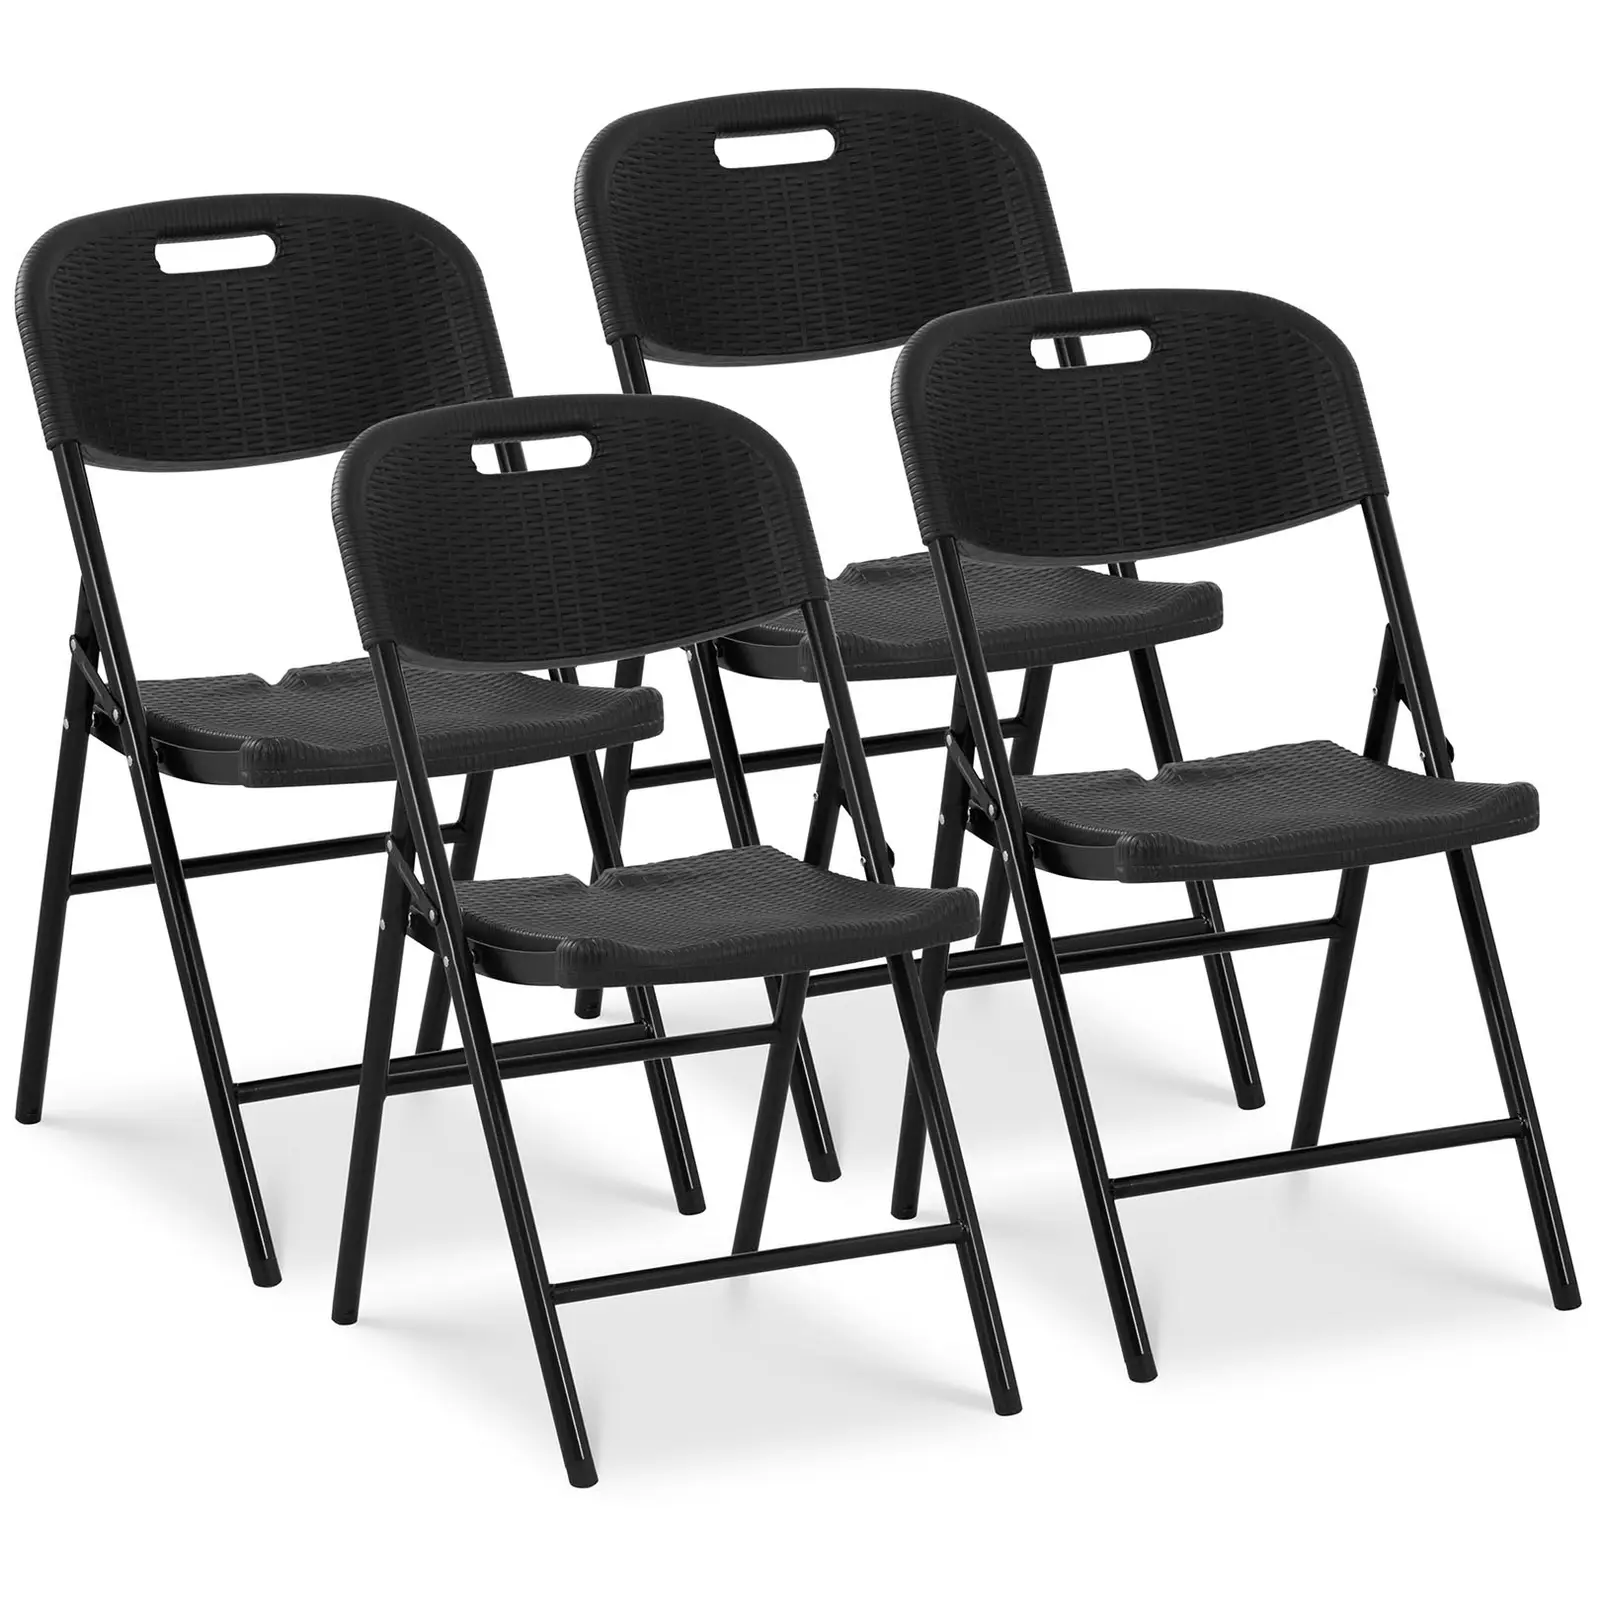 Сгъваеми столове - комплект от 4 броя - Royal Catering - 180 кг - площ за сядане: 52 x 36 см - черен